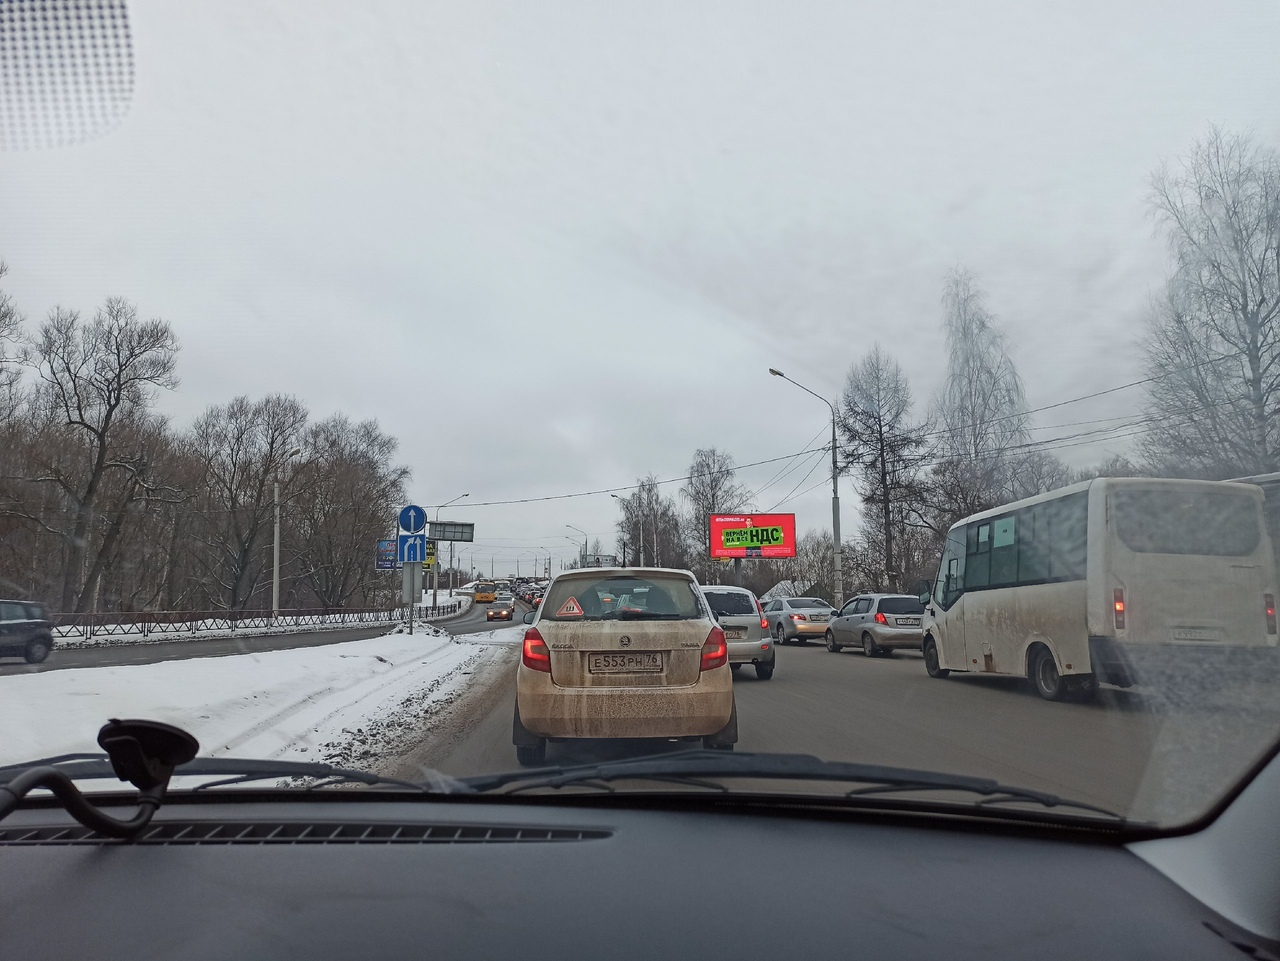 "Предложат жителям скинуться": в Ярославле начали искать деньги для строительства "Южного" моста